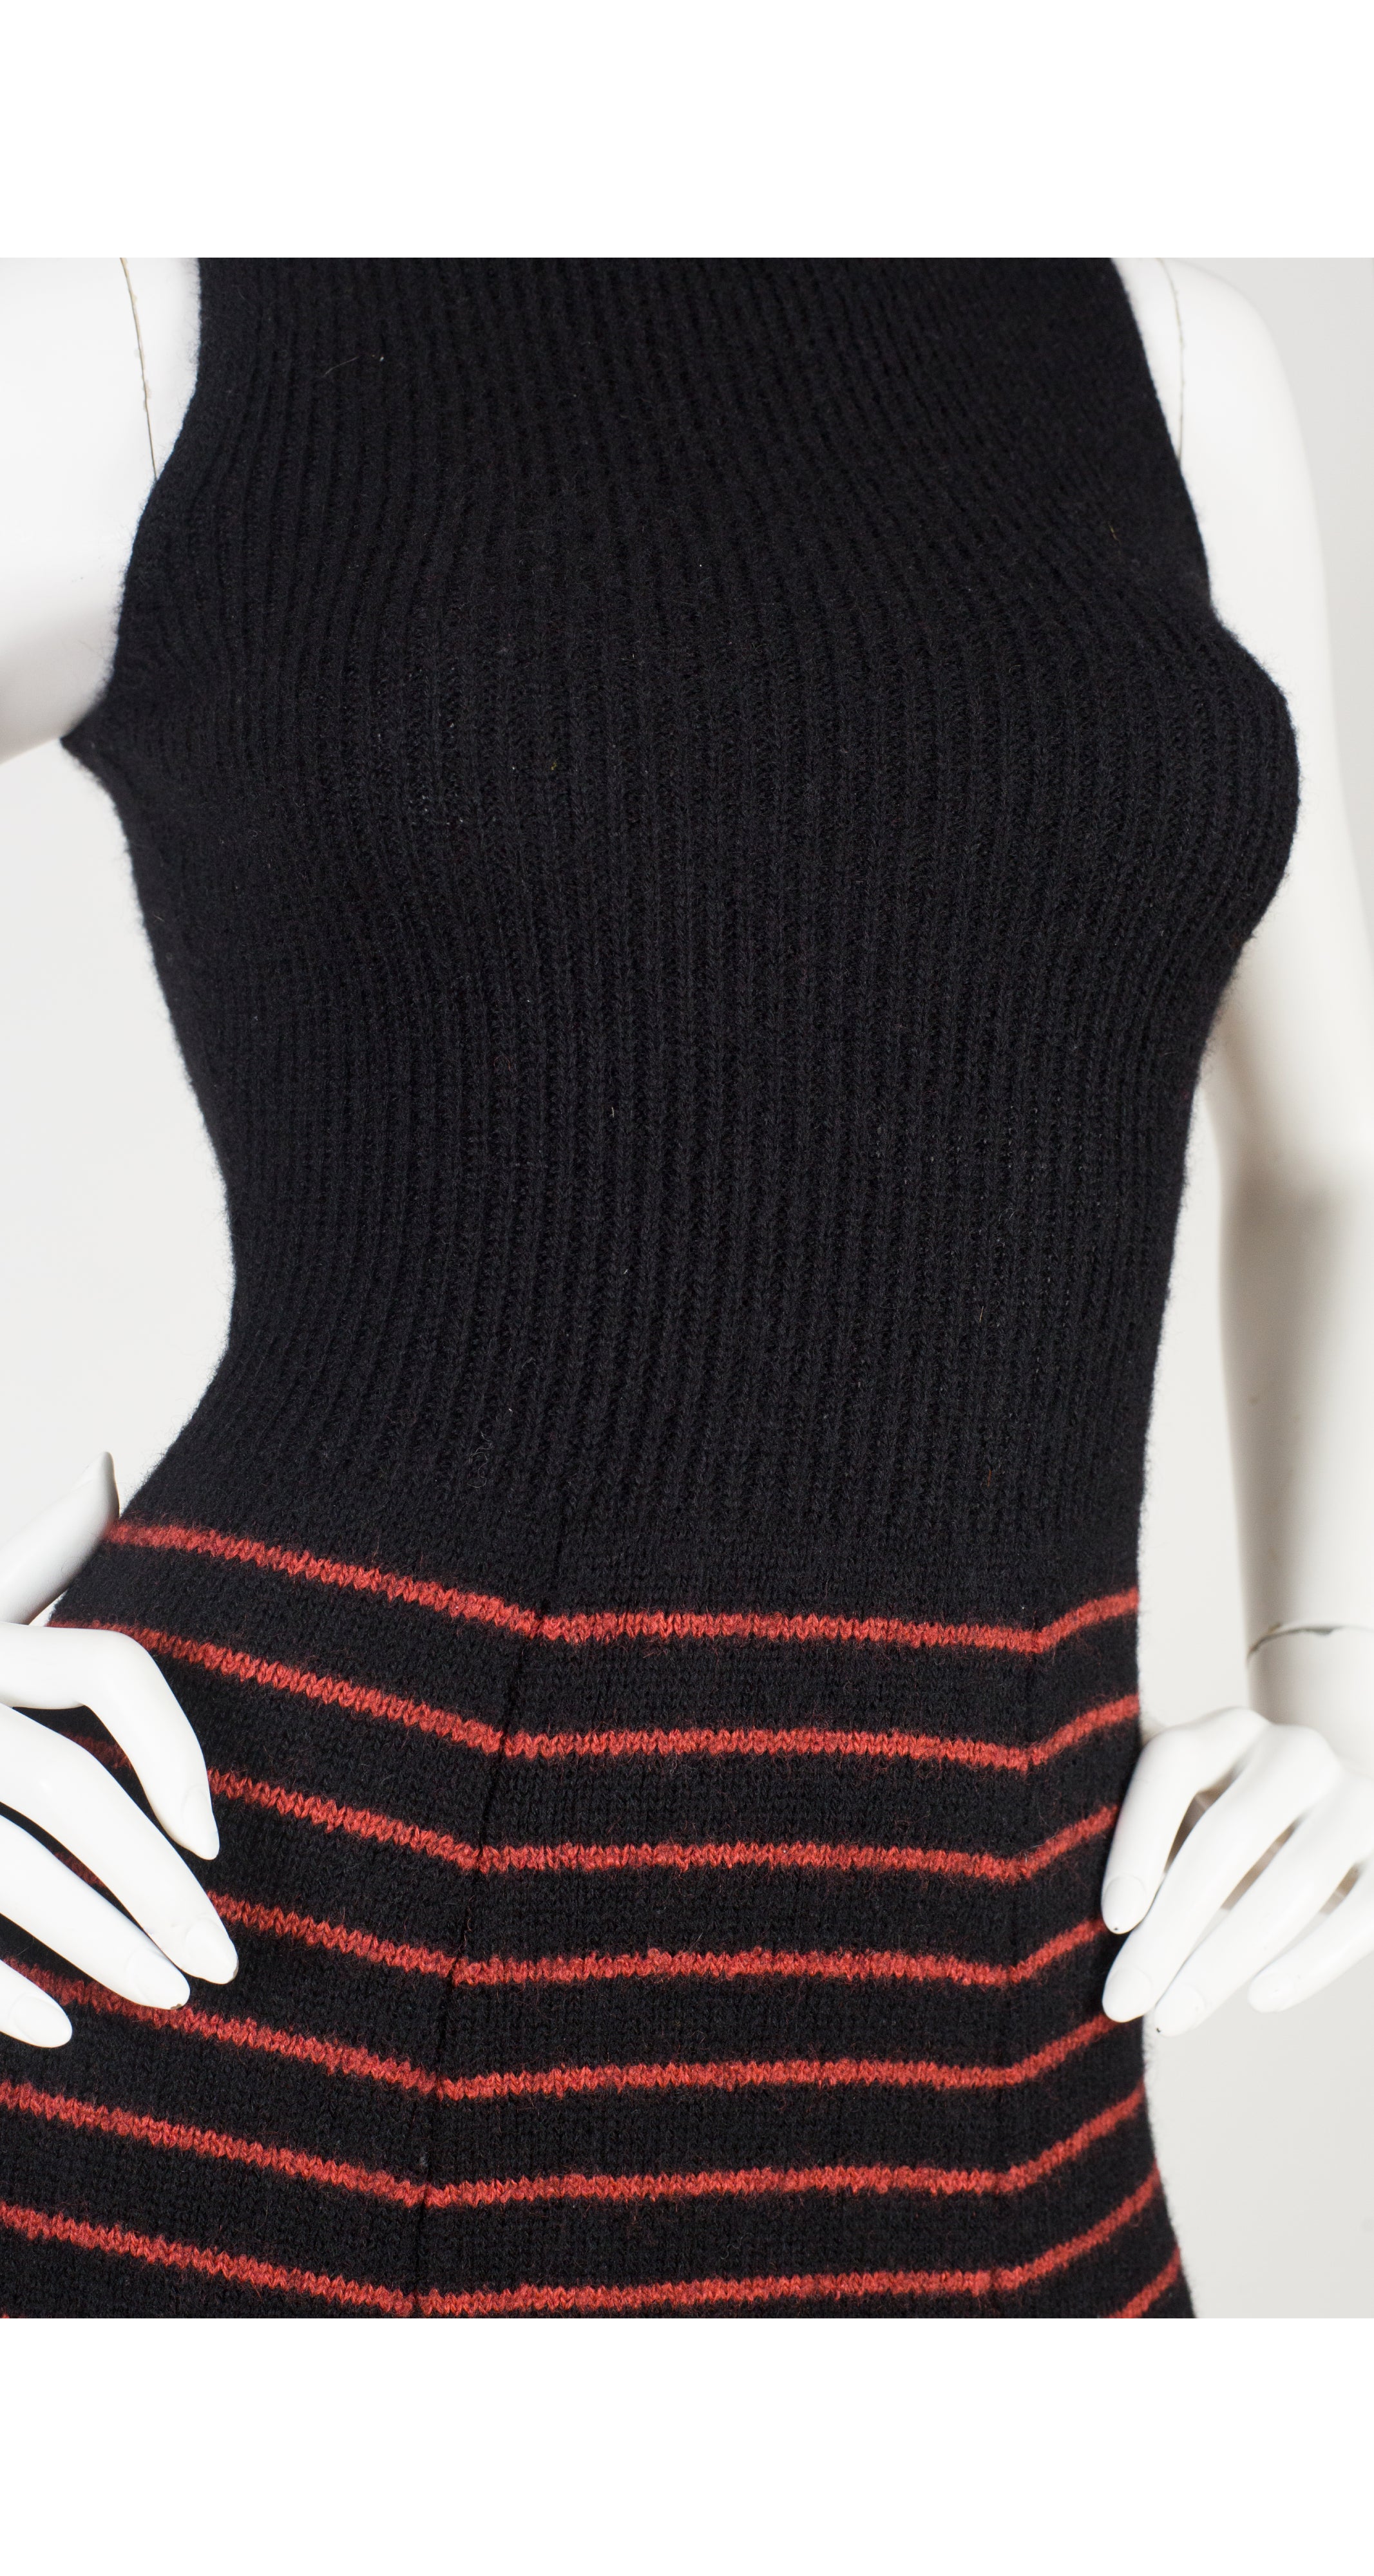 1970s Geometric Print Black Wool Knit Maxi Dress